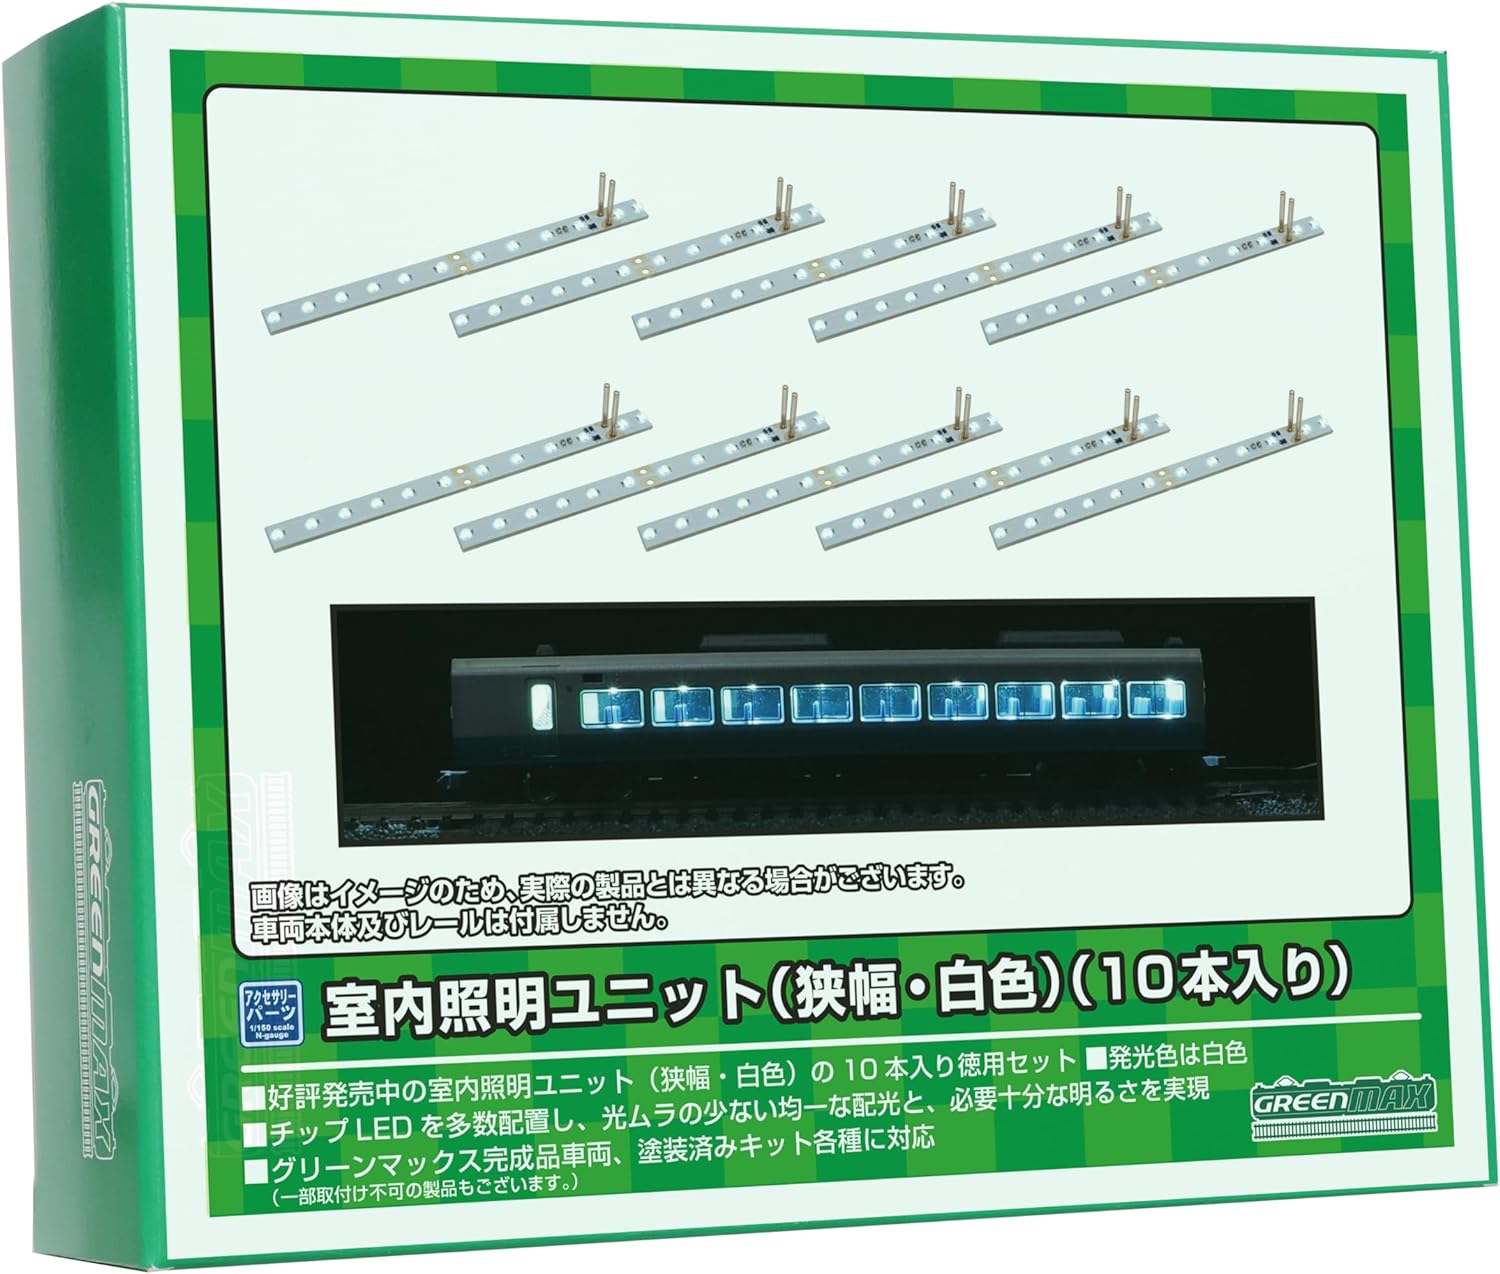 GreenMax 8463 N Gauge Indoor Lighting Unit (Narrow Wide, White) (10 Pieces) Model Railway Supplies - BanzaiHobby